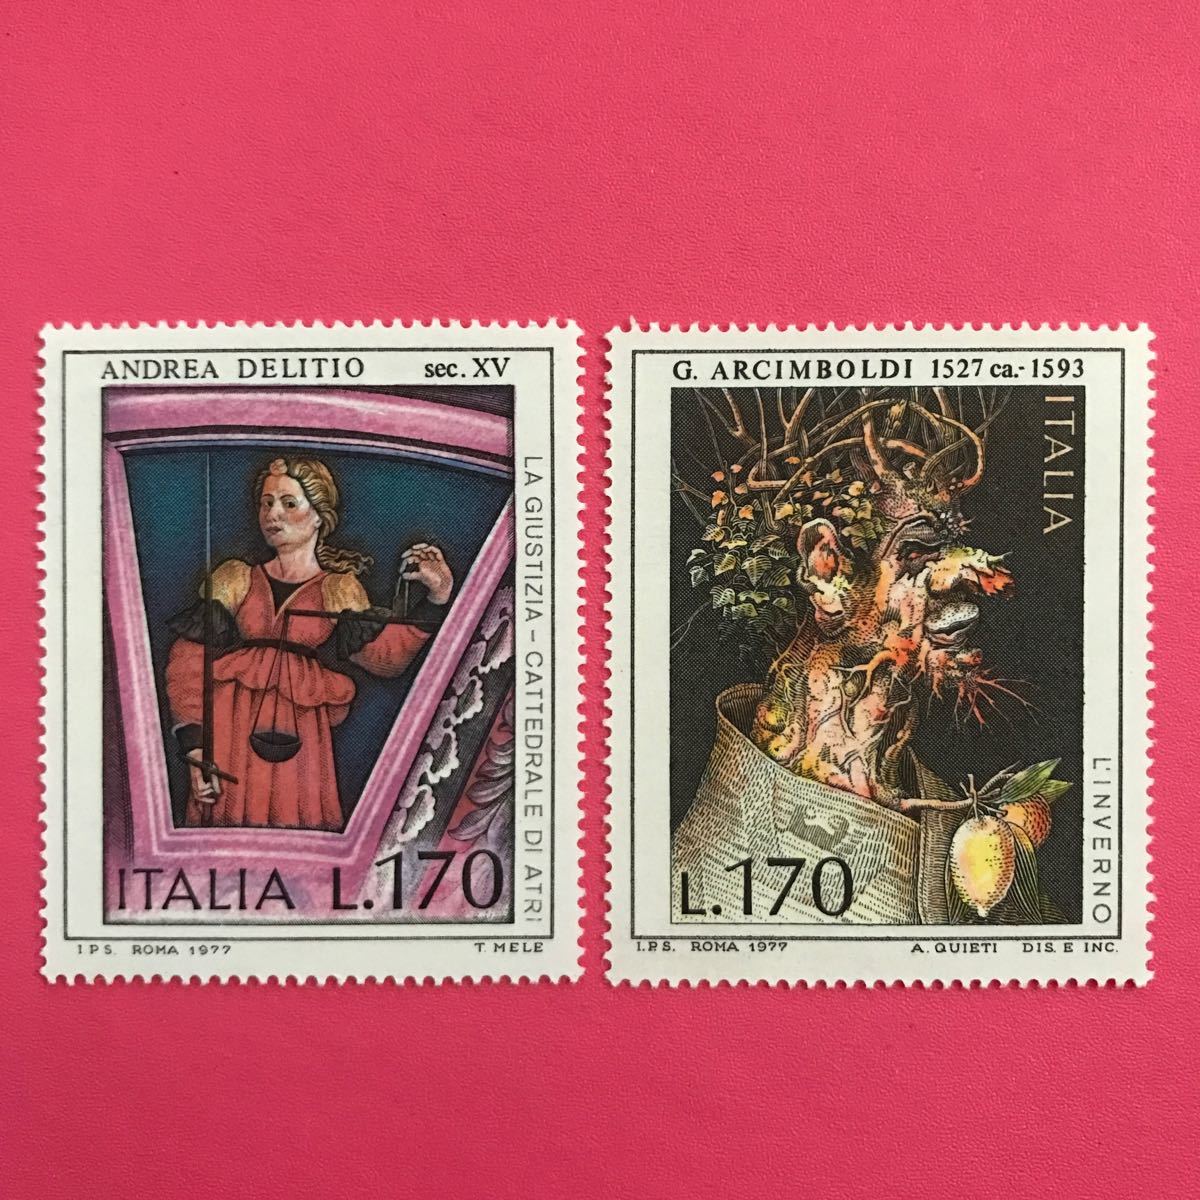 Ausländische unbenutzte Briefmarke★Italien 1977 Andrea De Ritio, Giuseppe Arcimboldo malt 2 Typen, Antiquität, Sammlung, Briefmarke, Postkarte, Europa